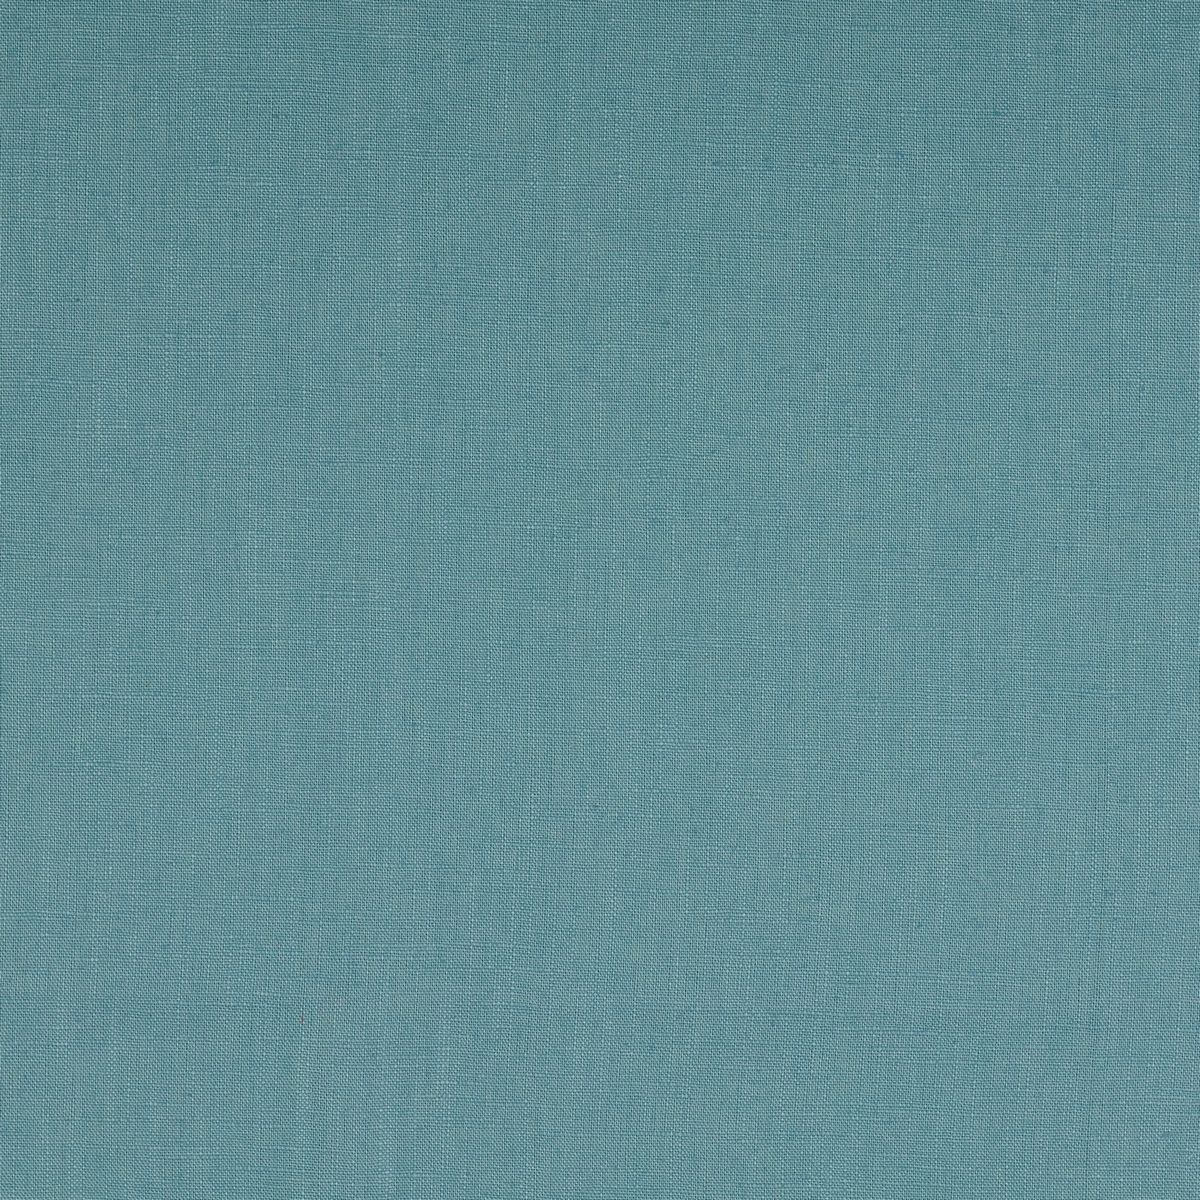 Azure Blue Fabric by Chatham Glyn